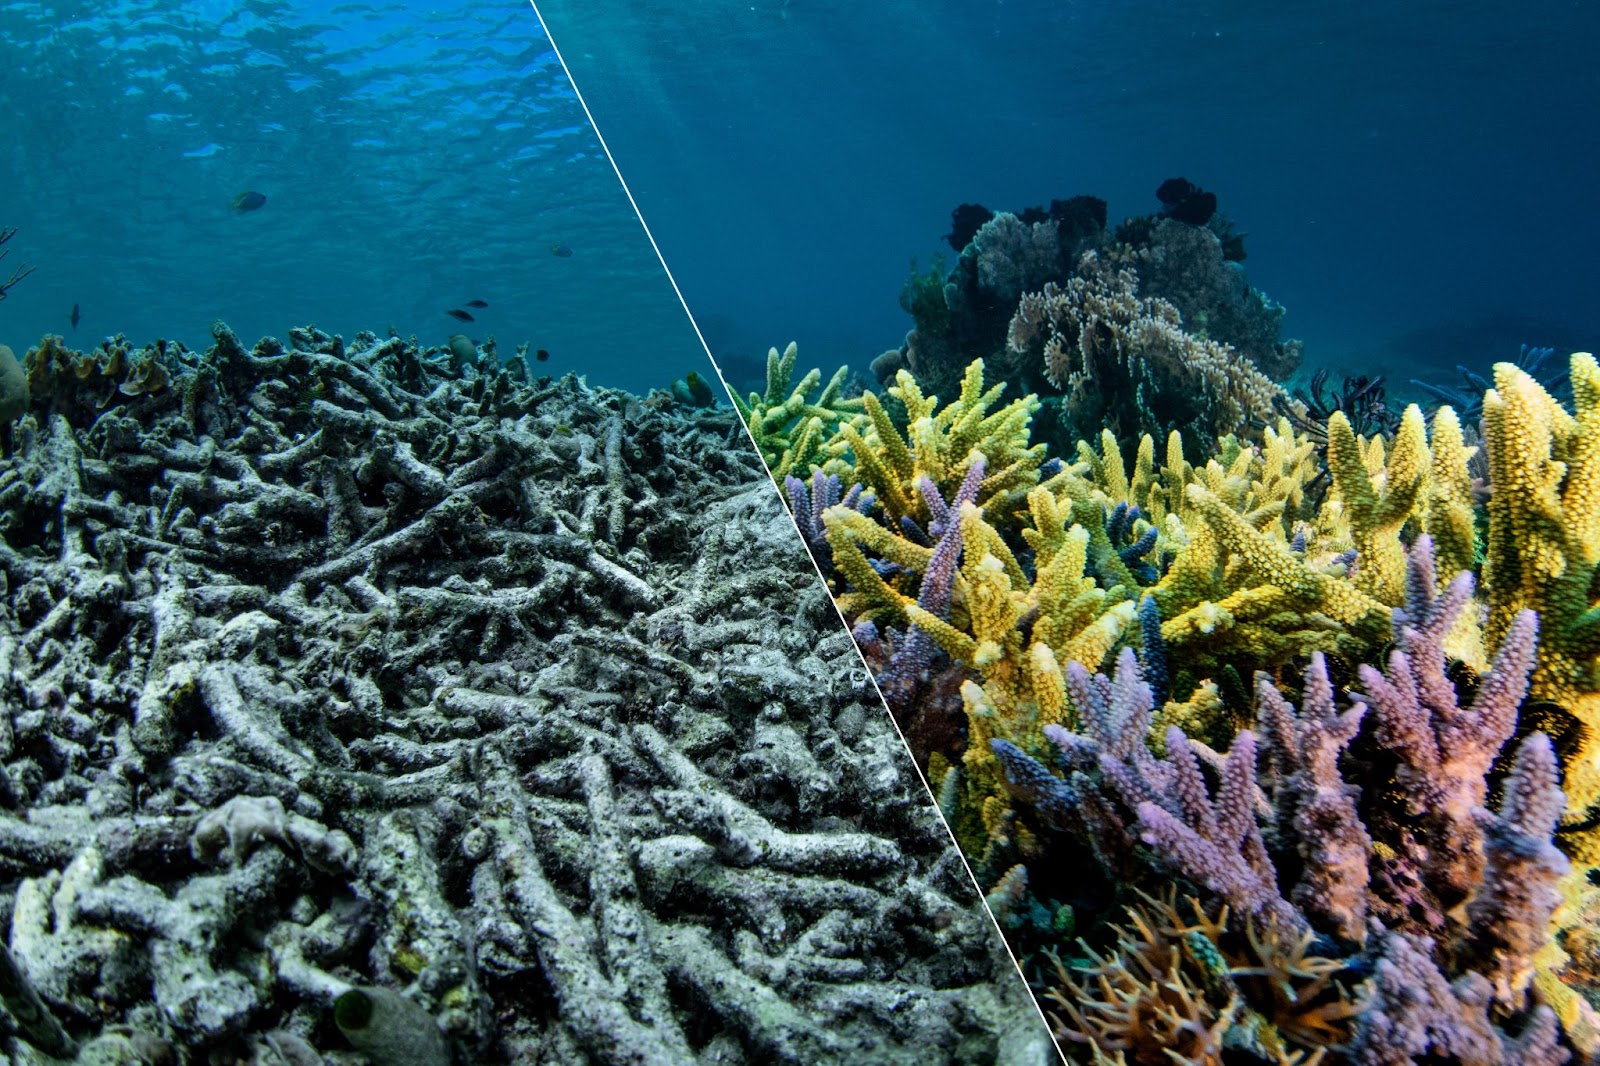 Una imagen de coral dividida por la mitad: a la izquierda, el coraldescolorido se hunde mientras el mar ondula sobre él. A la derecha vemos uncoral erguido, vibrante en amarillos, morados y rosas. Un contraste entre elcoral moribundo y elsano.